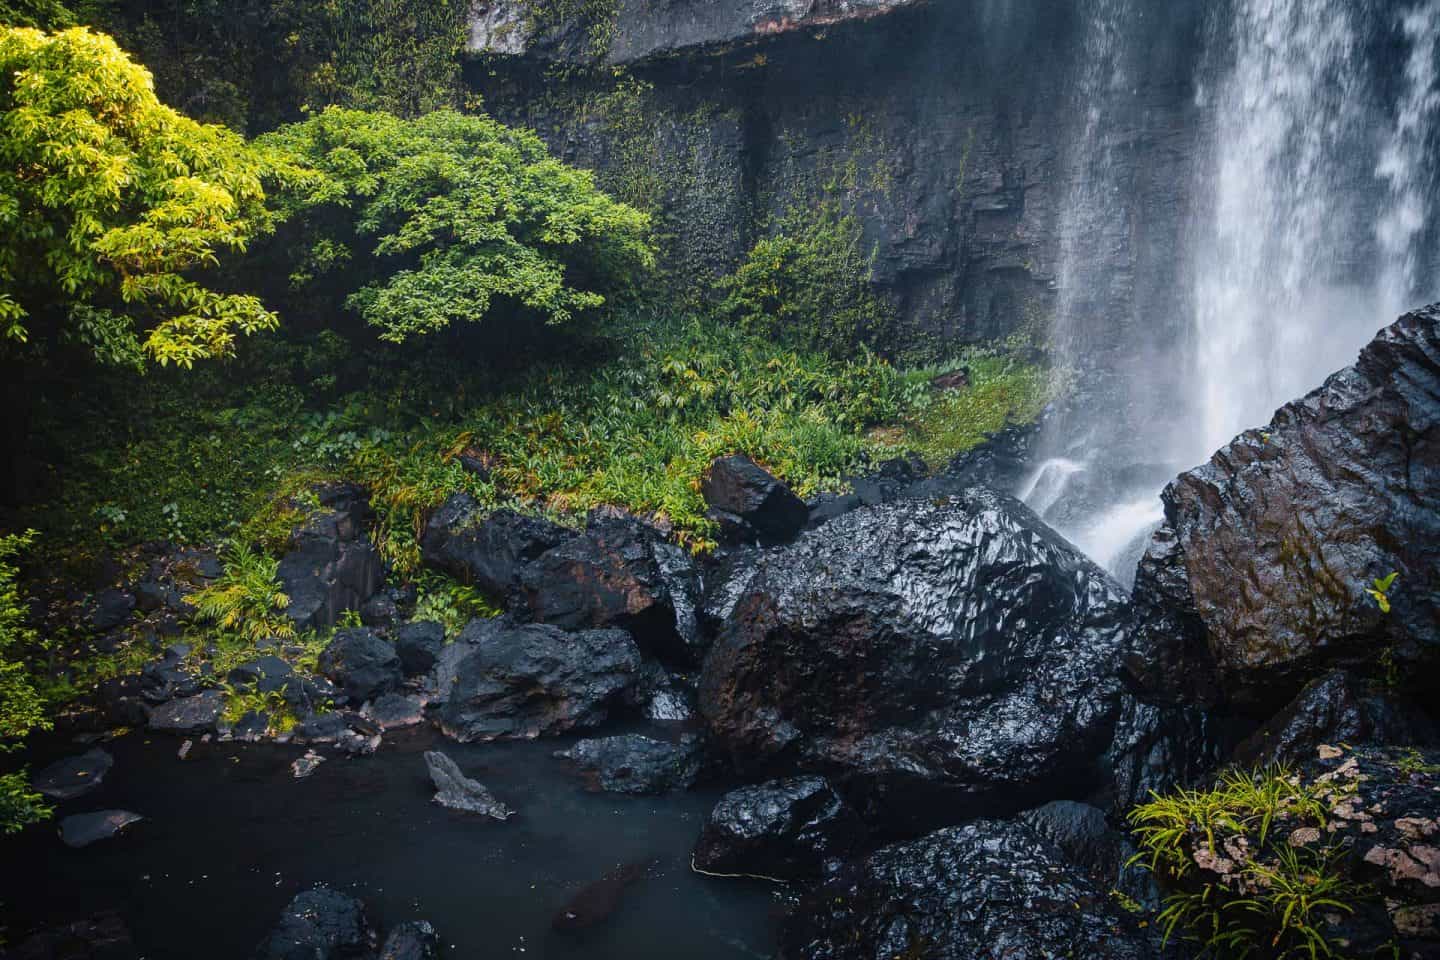 zillie falls, waterfall circuit cairns